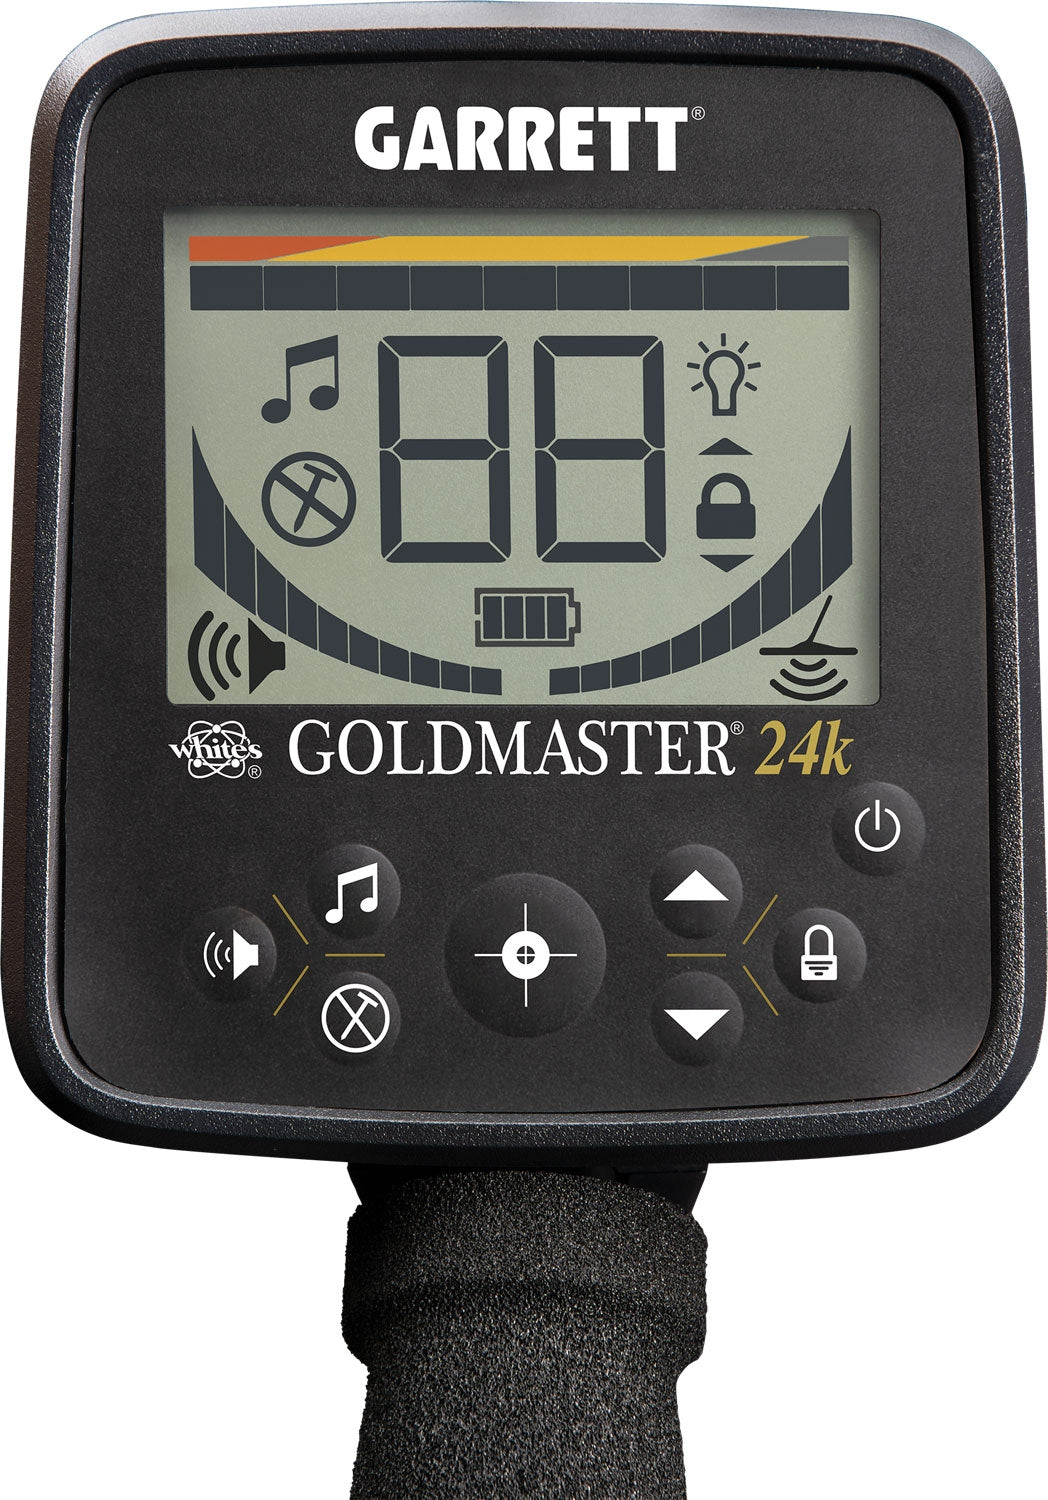 Whites GoldMaster GMT 24K Metal Detector Display